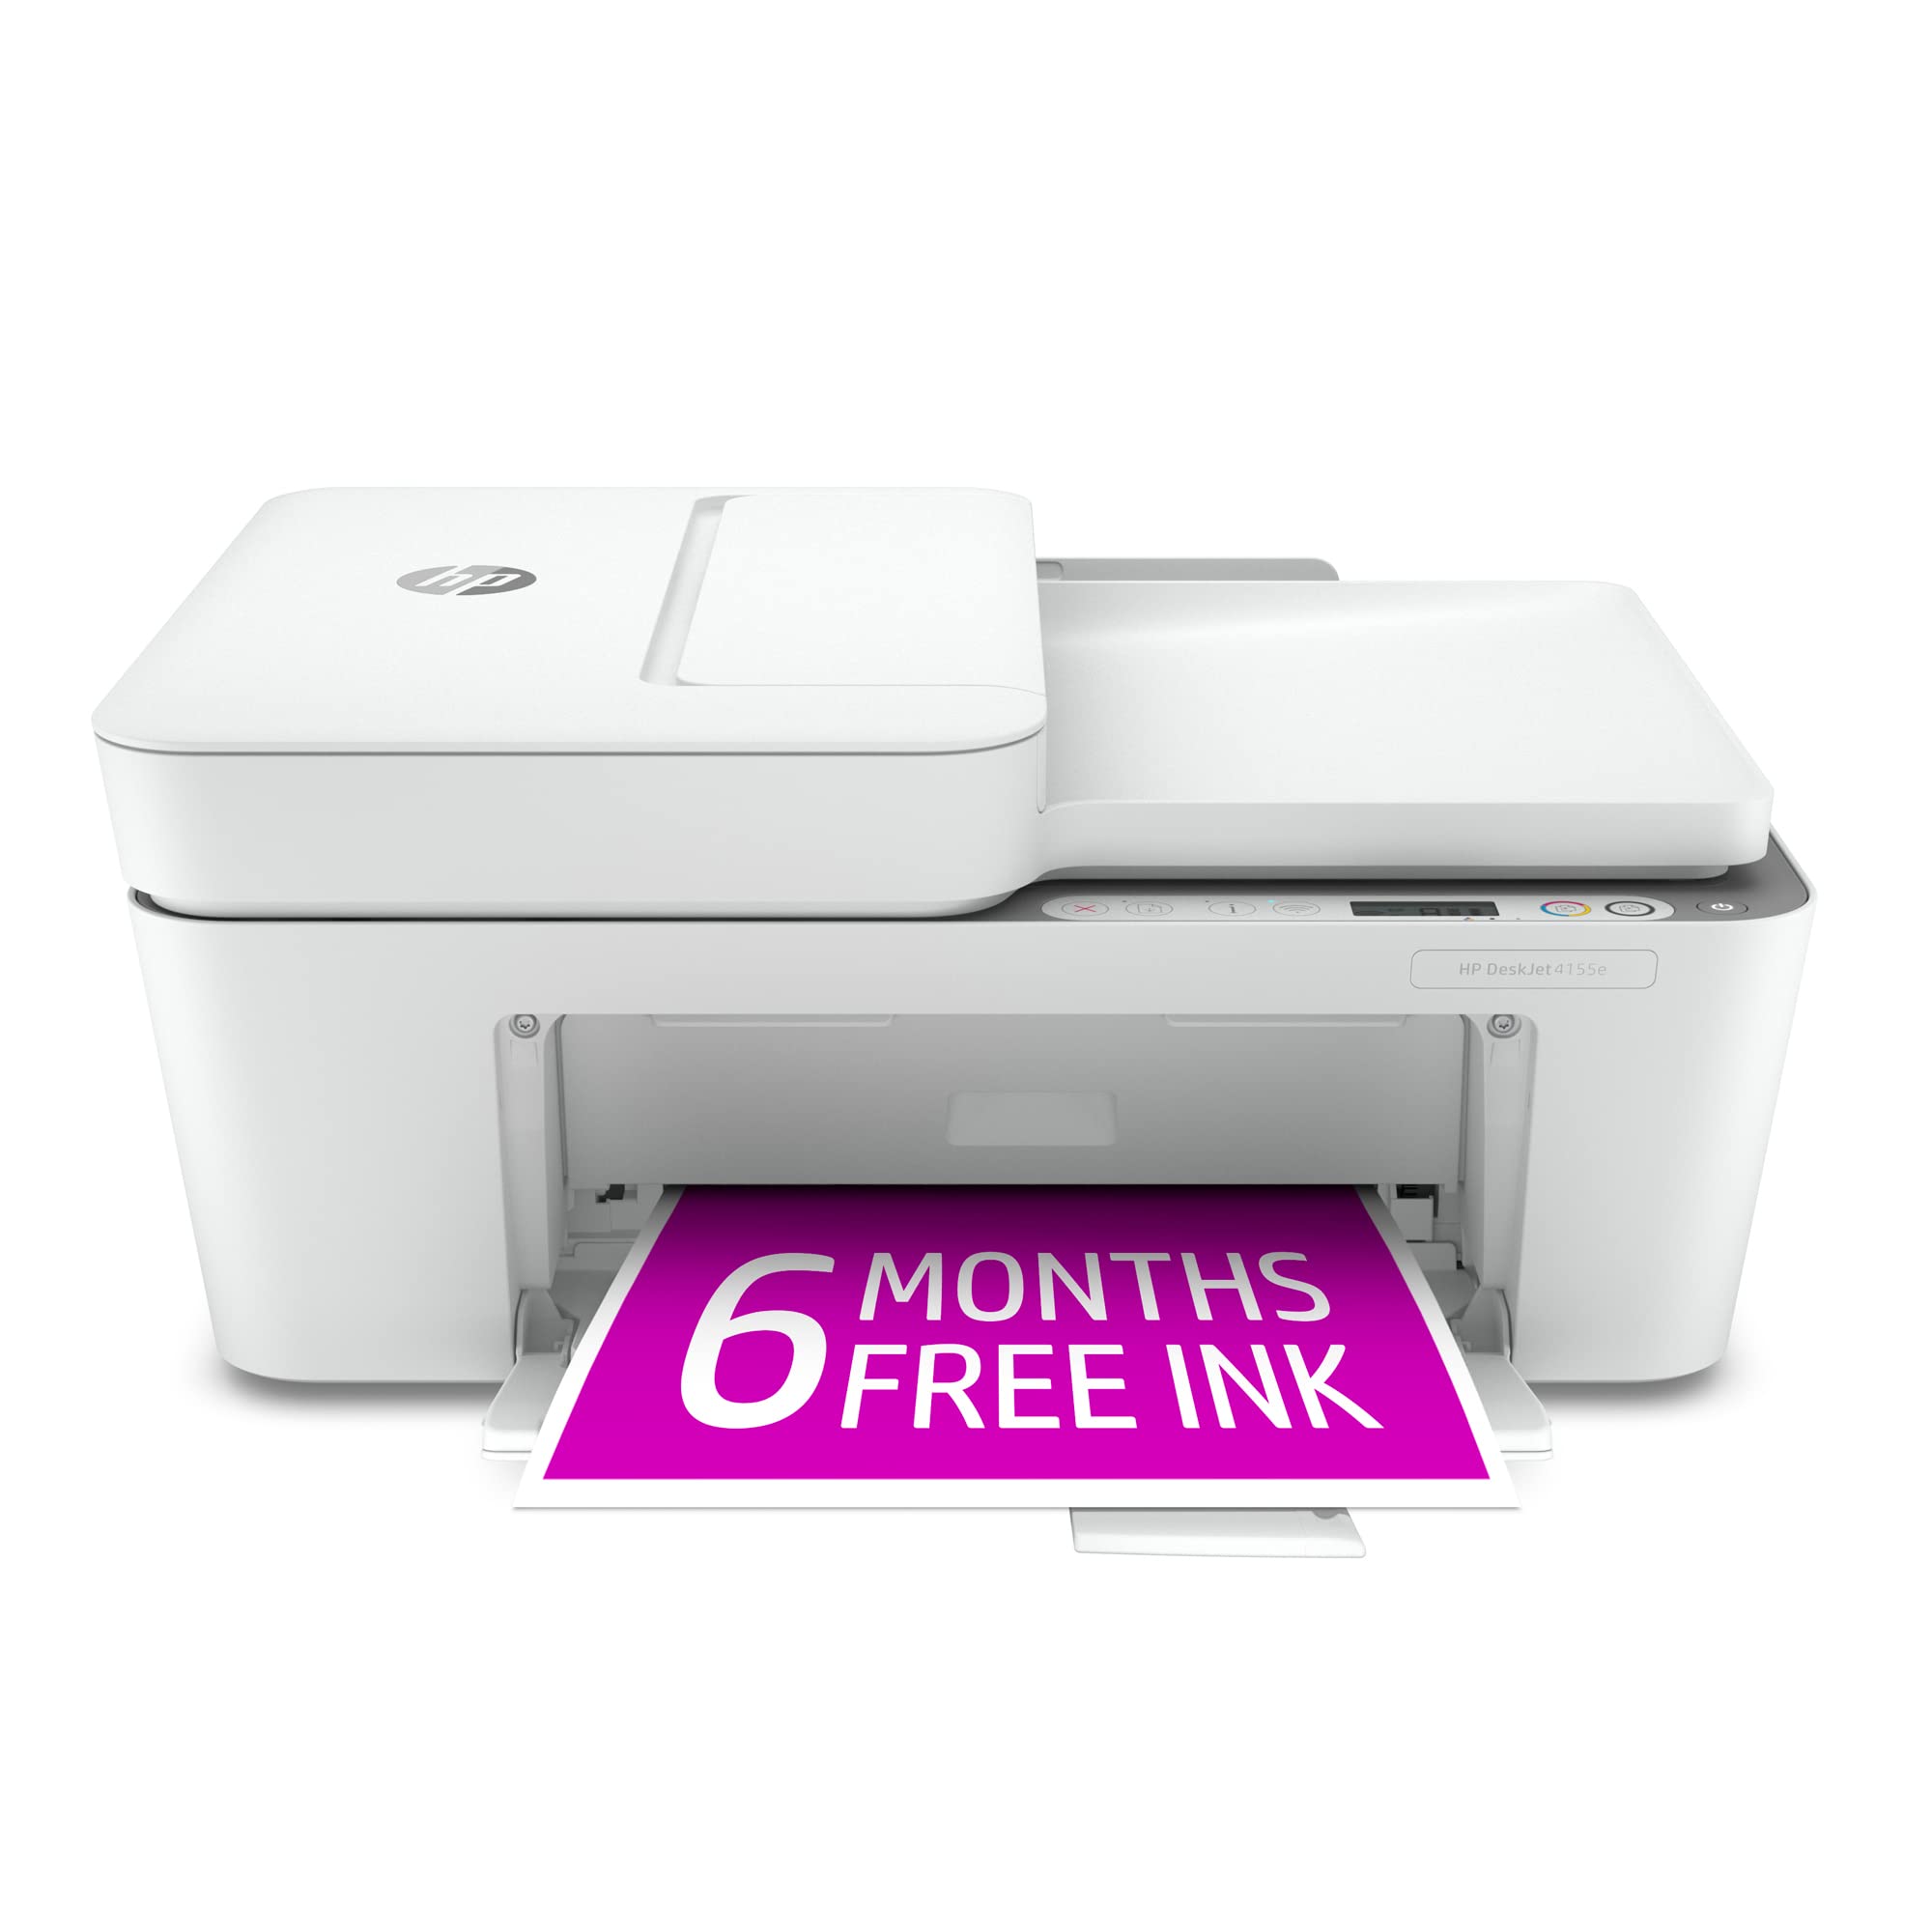 HP DeskJet 4155e Wireless Color Inkjet Printer, Print, scan, copy, Easy setup, Mobile printing